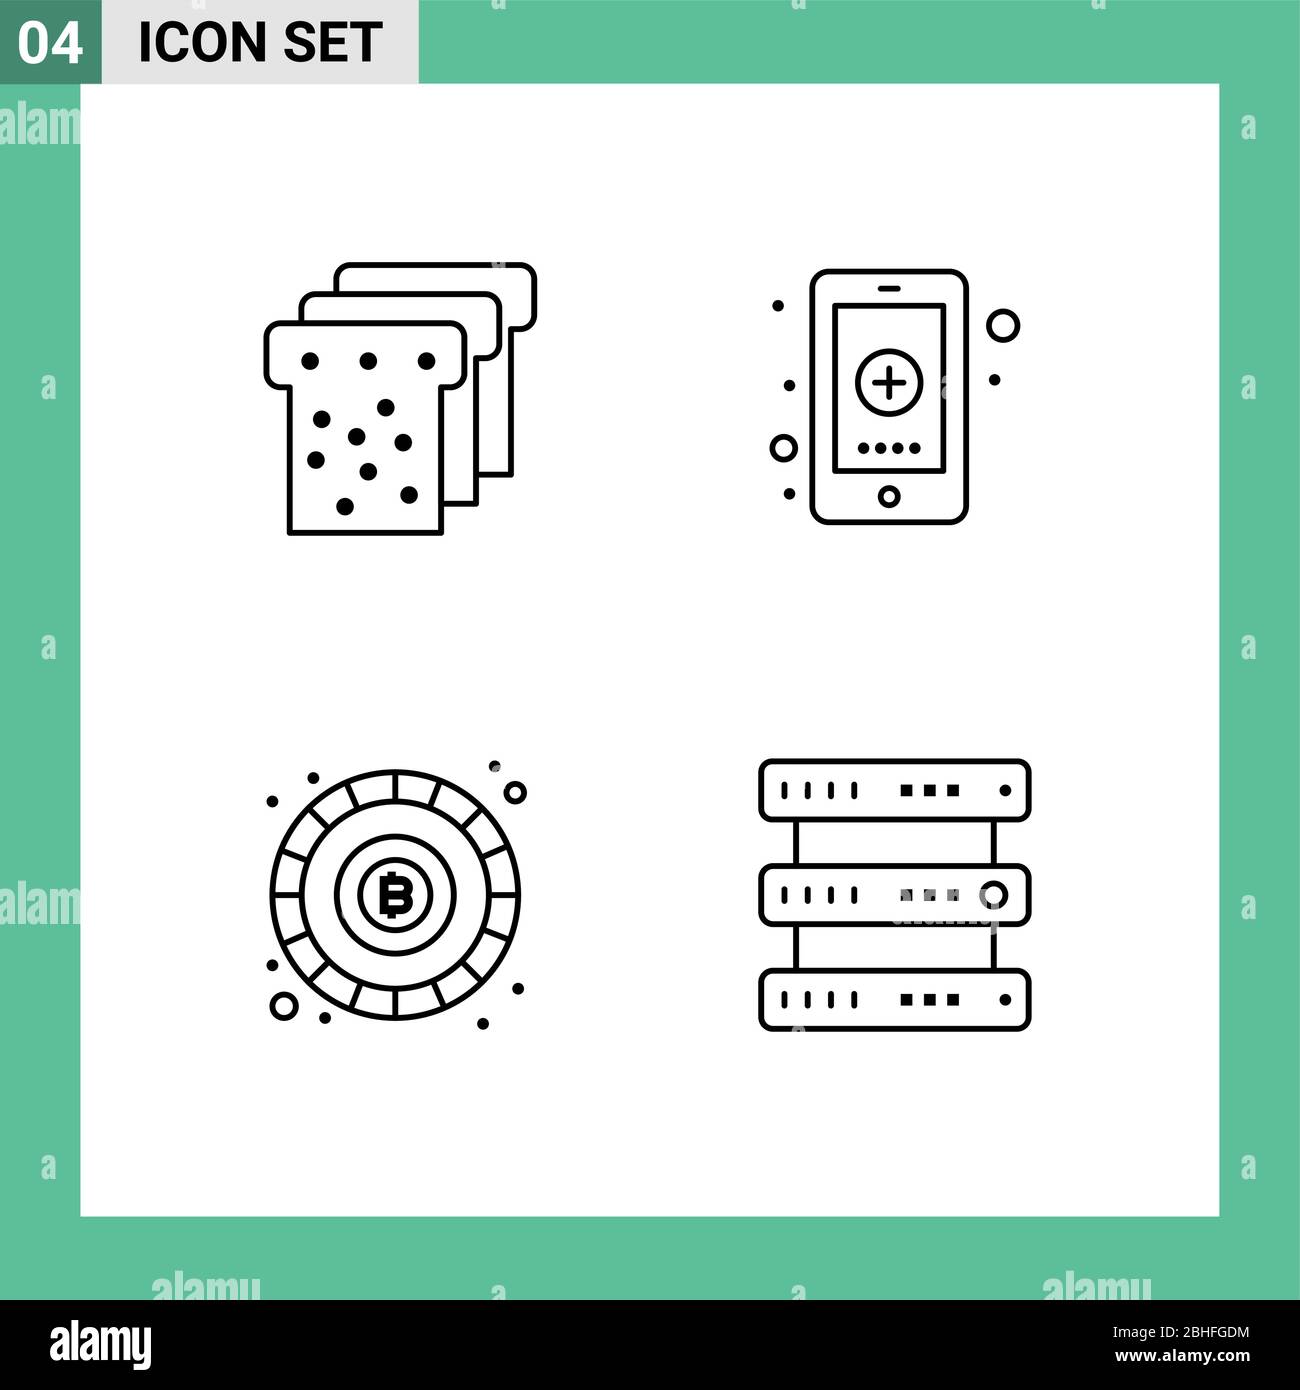 Gruppo di 4 simboli e insegne Filledline Flat Colors per pane, blockchain, app, medicale, token Editable Vector Design Elements Illustrazione Vettoriale